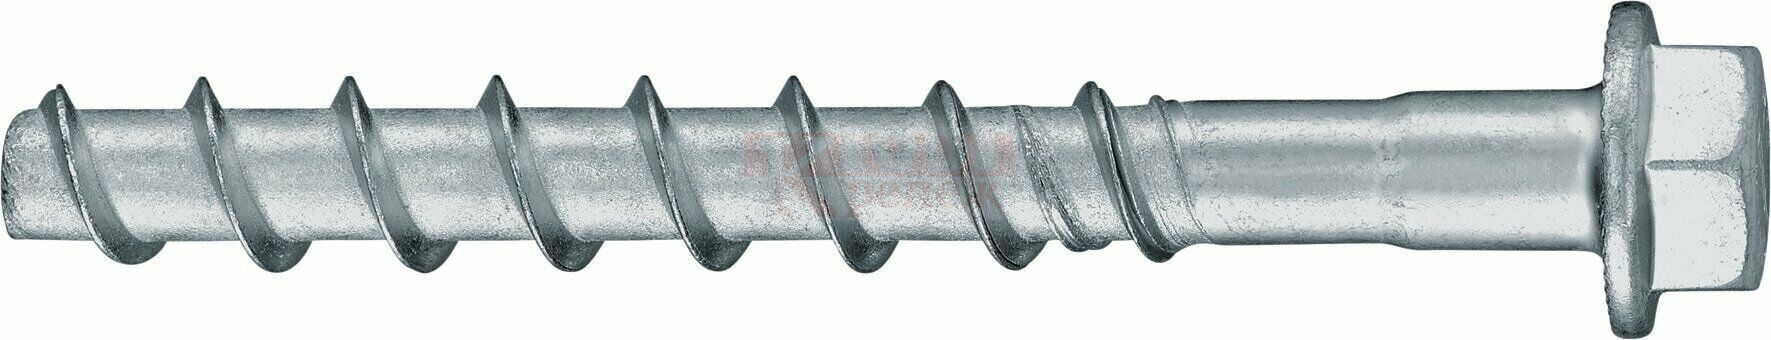 HUS2-H 8/10 8x95 Анкер-шуруп HILTI для бетона оц. сталь, 10x95 40/20 мм